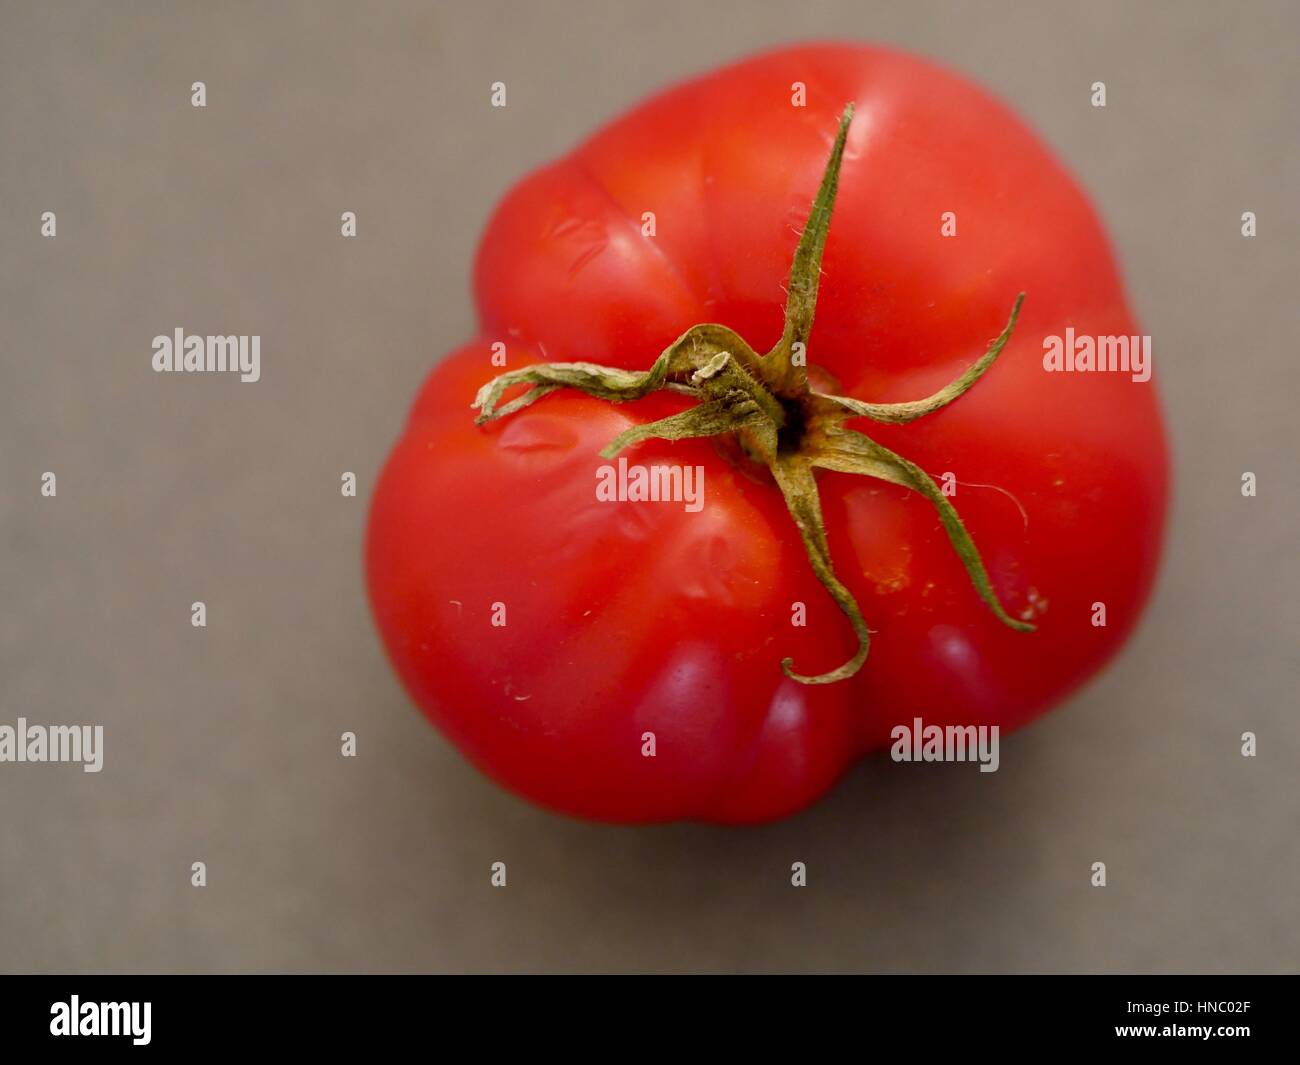 Chiudere una grande rosso lucido organici di pomodoro, vista dall'alto con stelo, lo sfondo grigio, full-frame, area di testo a sinistra Foto Stock